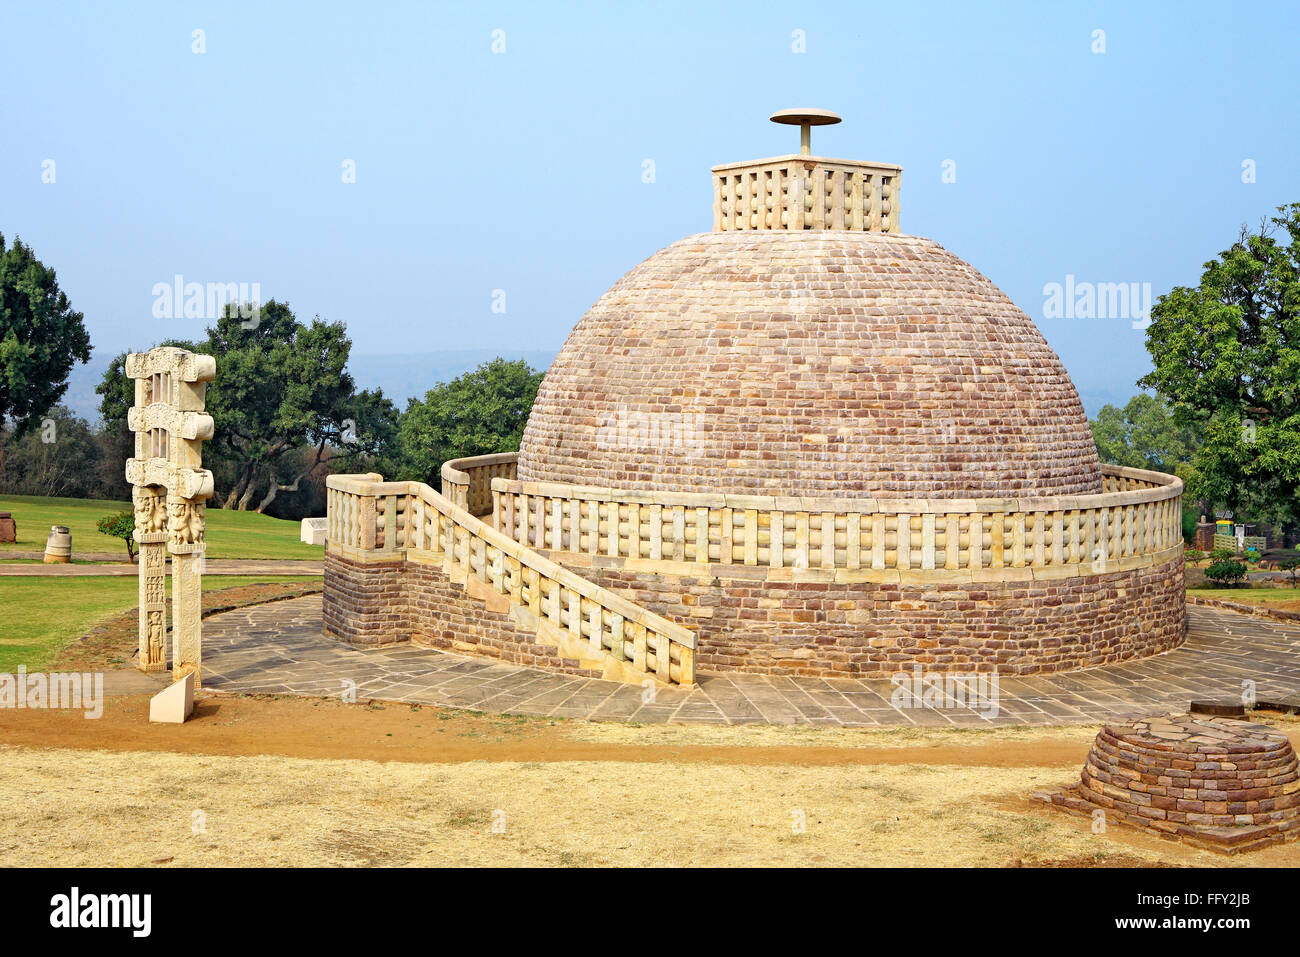 Stupa 3 steht nordöstlich der Hauptstupa 1 und ähnlich im Design, sondern kleinere ein Gateway Sanchi Bhopal Madhya Pradesh Stockfoto